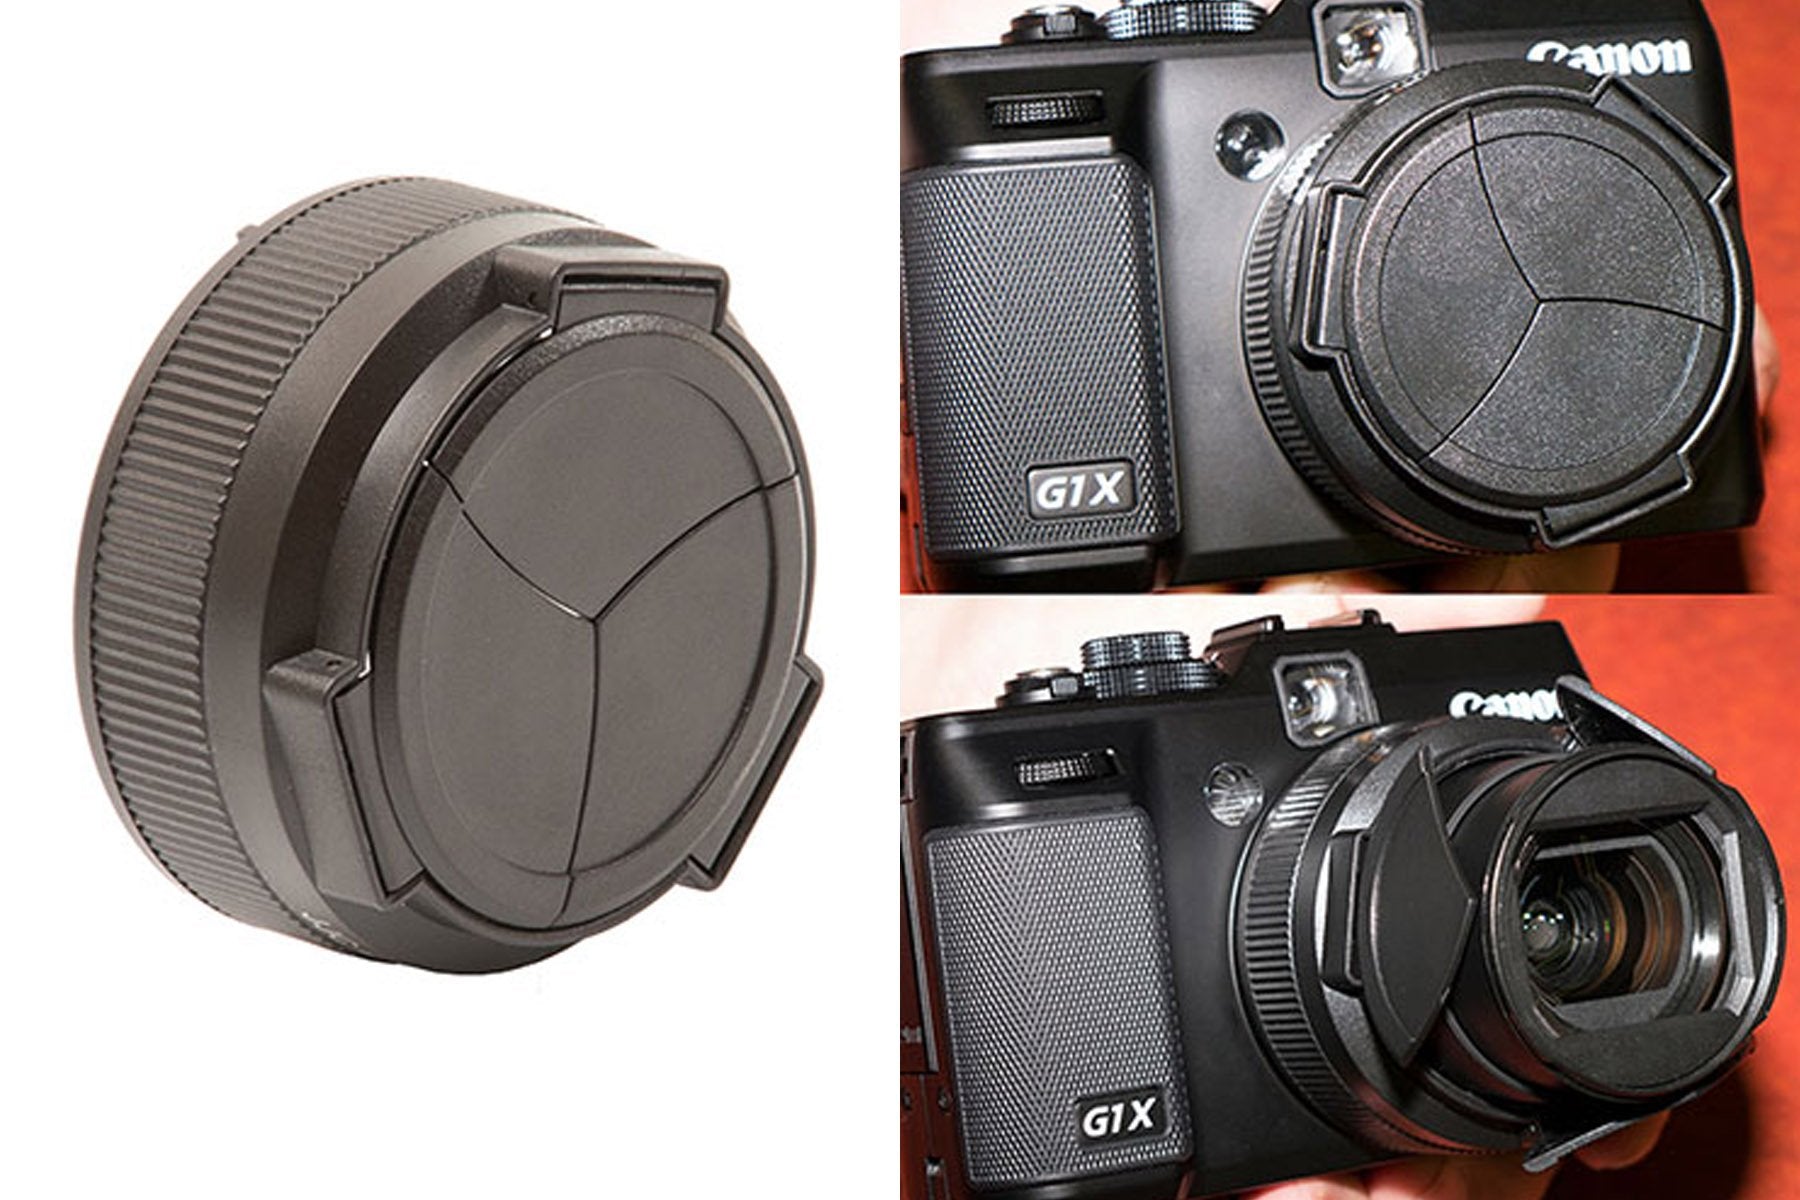 Auto Lens Cap for a Canon Powershot G1X